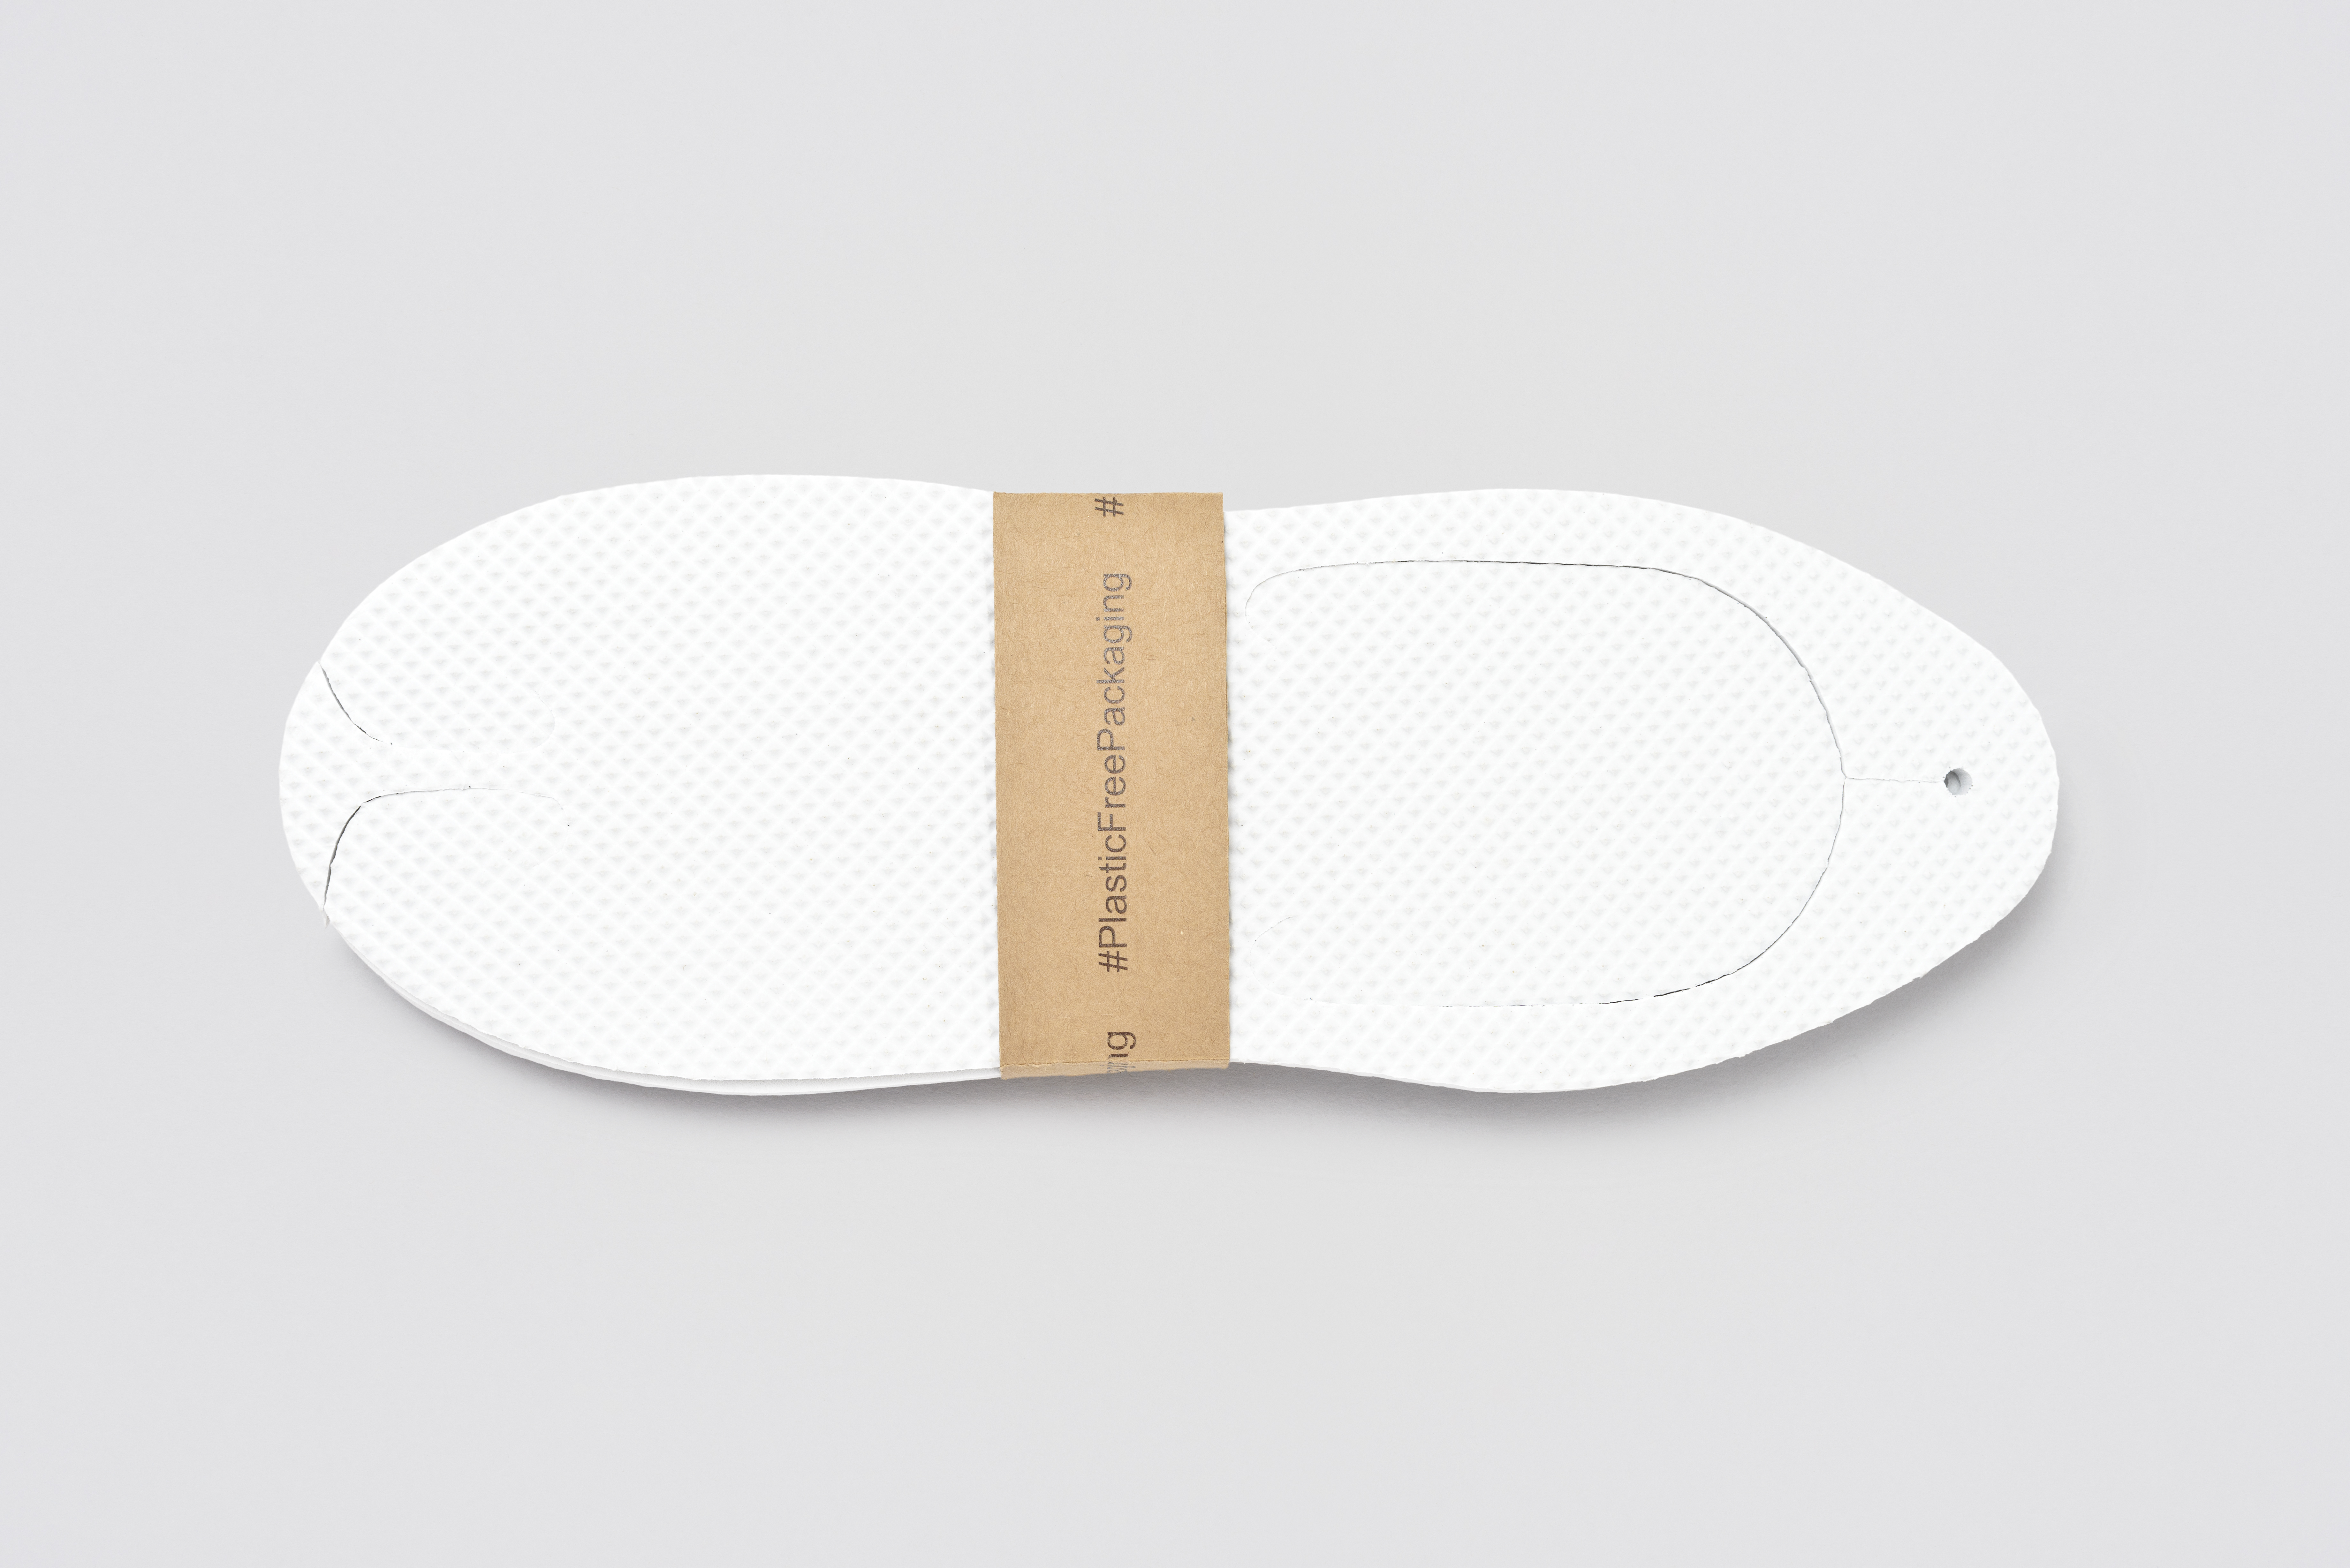 Hammam Sandal, white, size 28.2cm, #PlasticFreePackaging